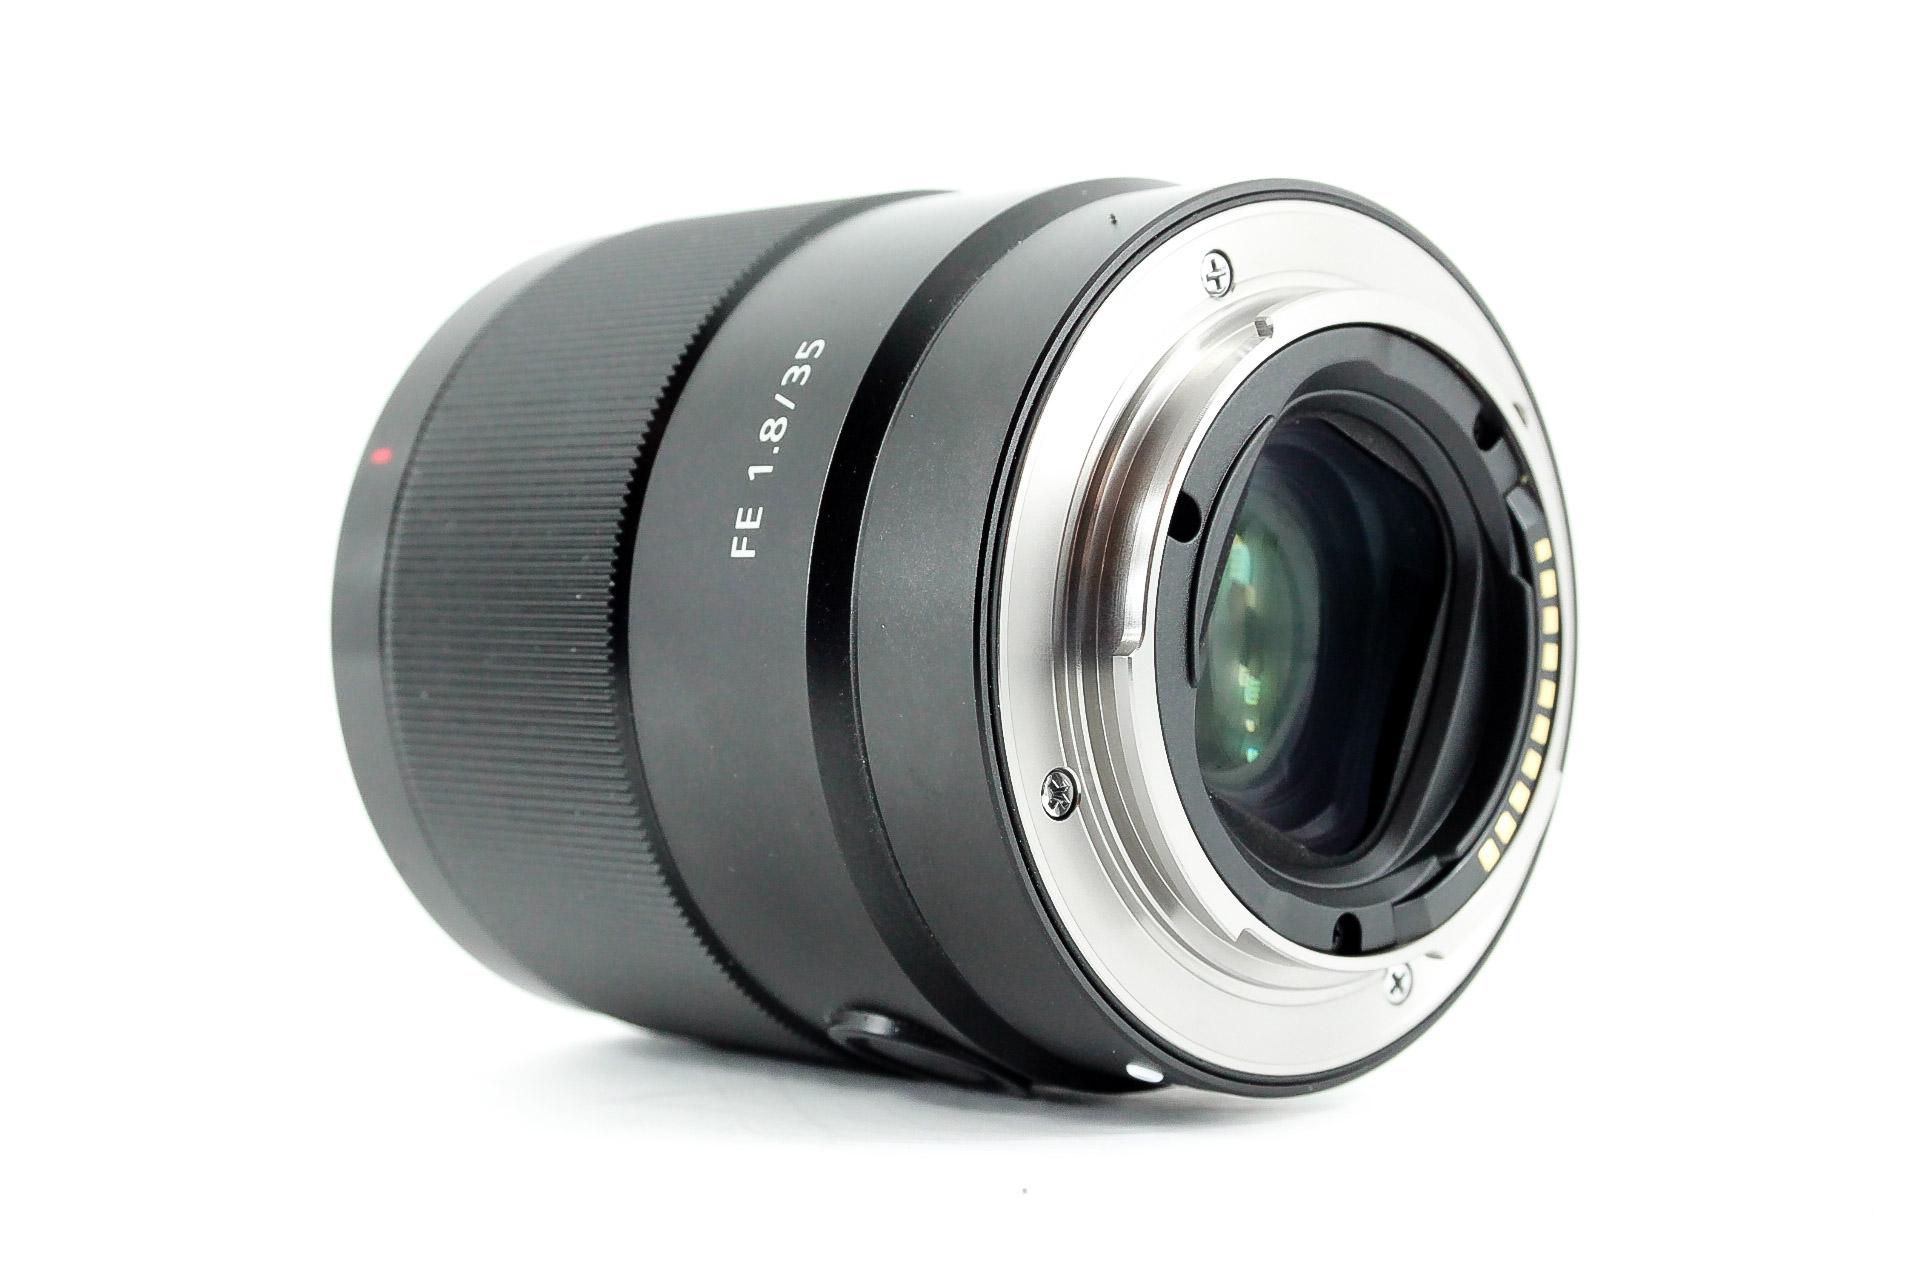 Sony E Mount Sony FE 35mm F1.8 Full-Frame Lens (SEL35F18F